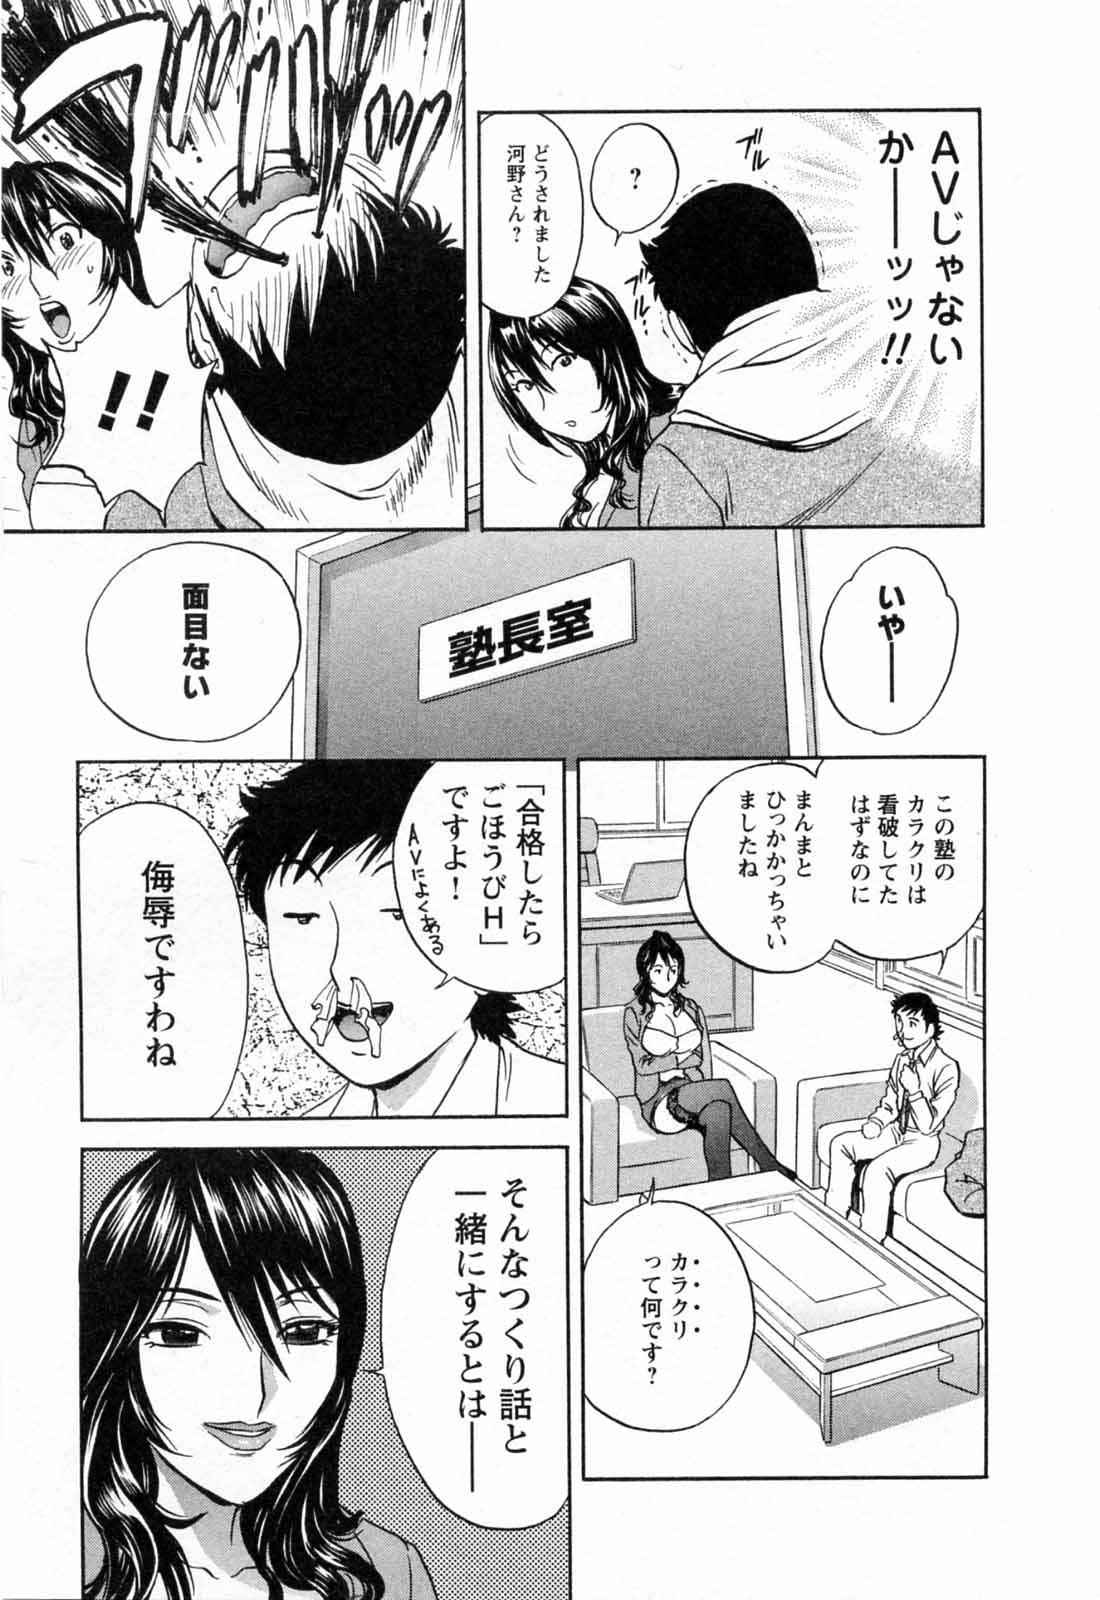 [Hidemaru] Mo-Retsu! Boin Sensei (Boing Boing Teacher) Vol.5 18